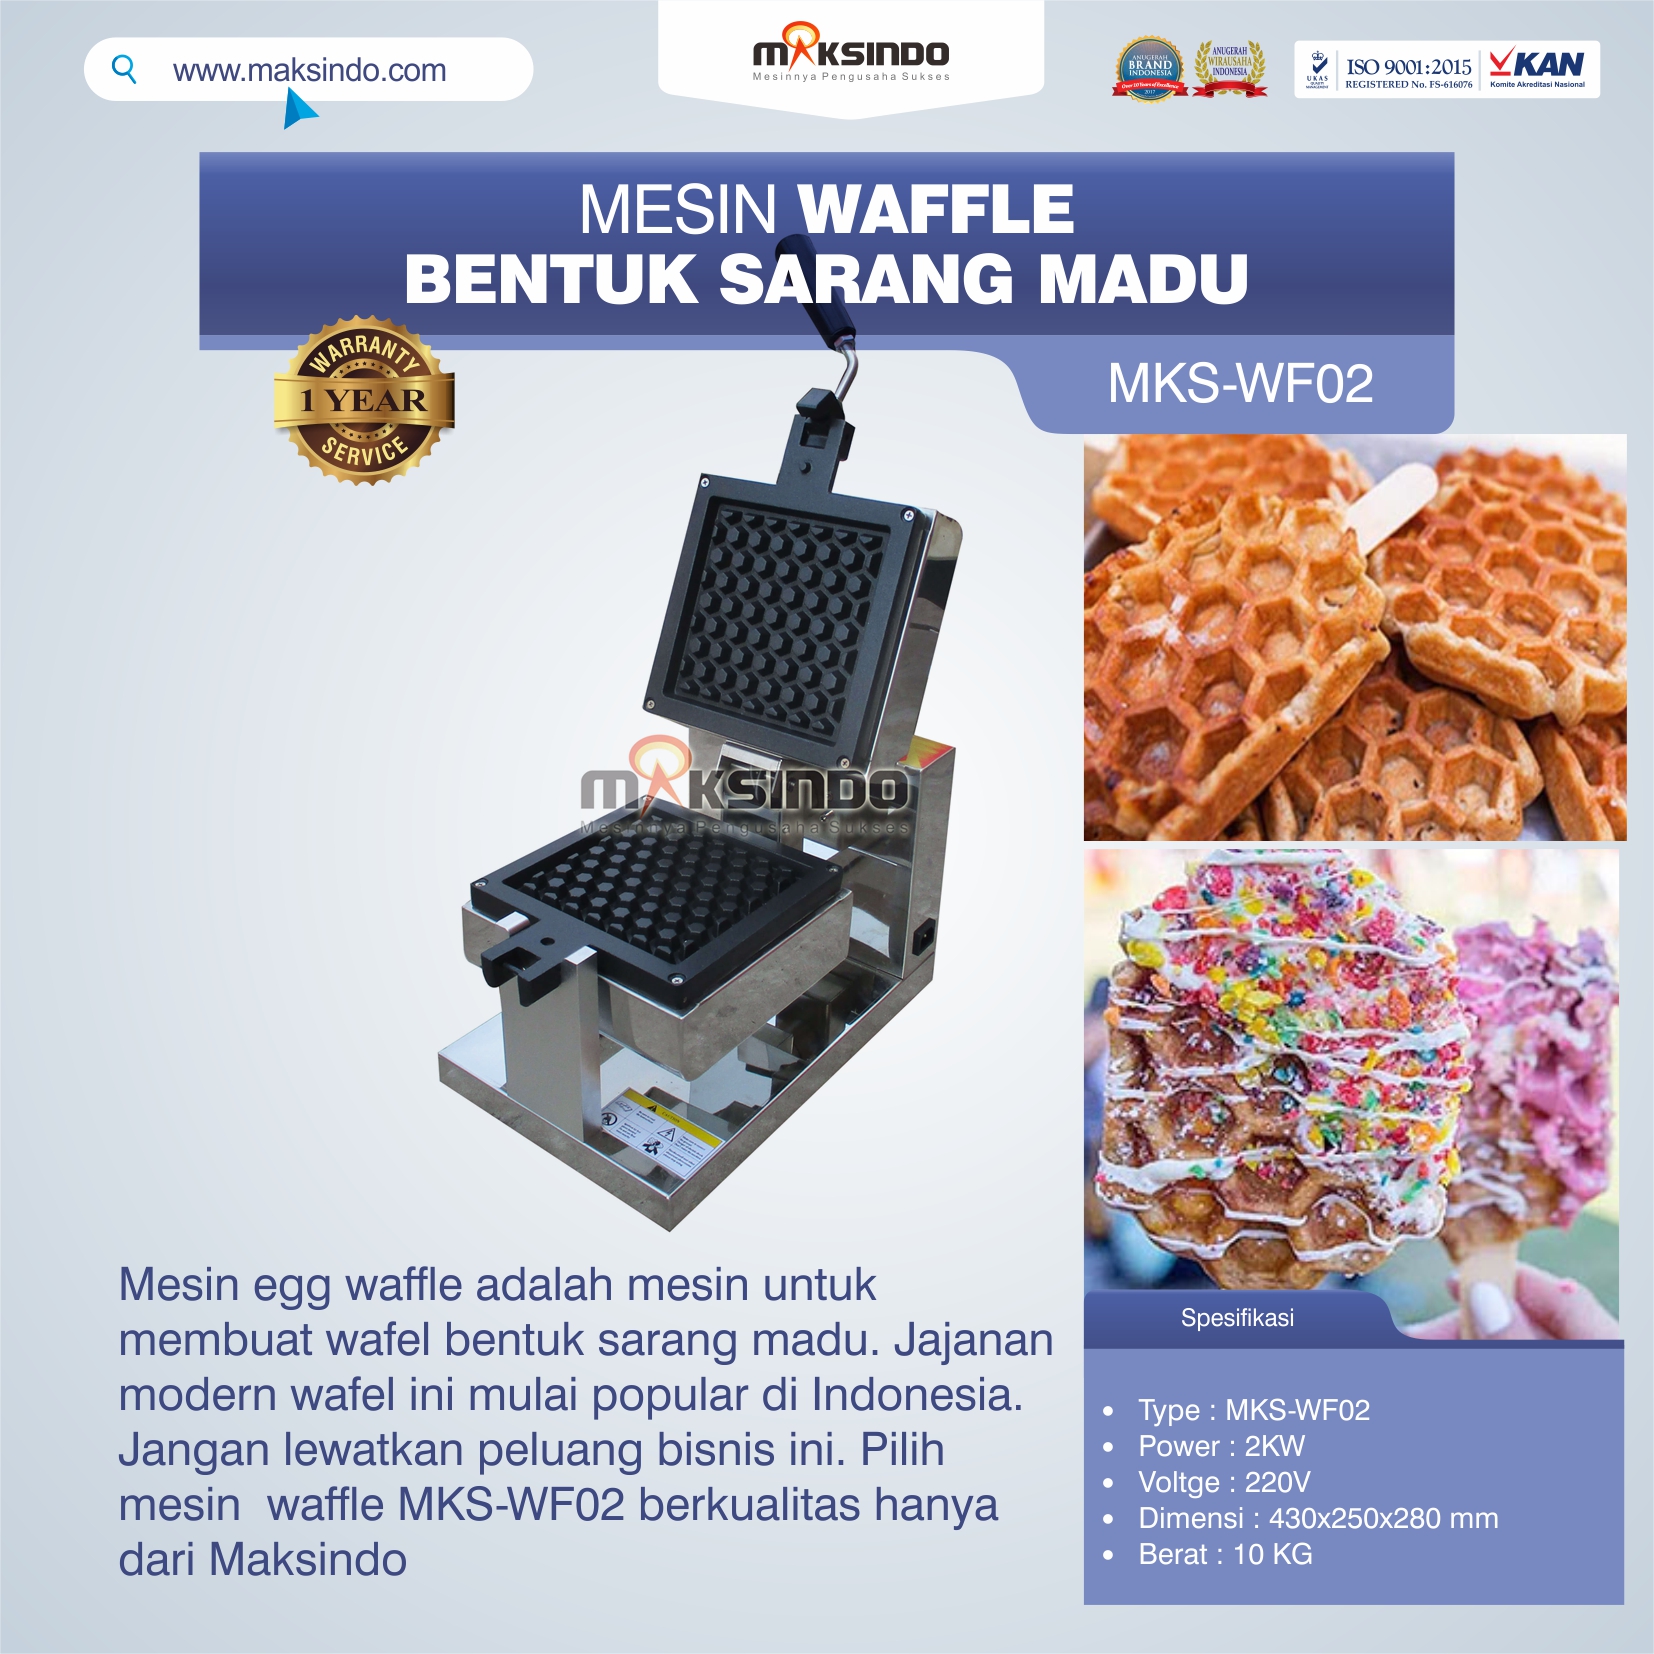 Jual Mesin Waffle Bentuk Sarang Madu MKS-WF02 di Tangerang